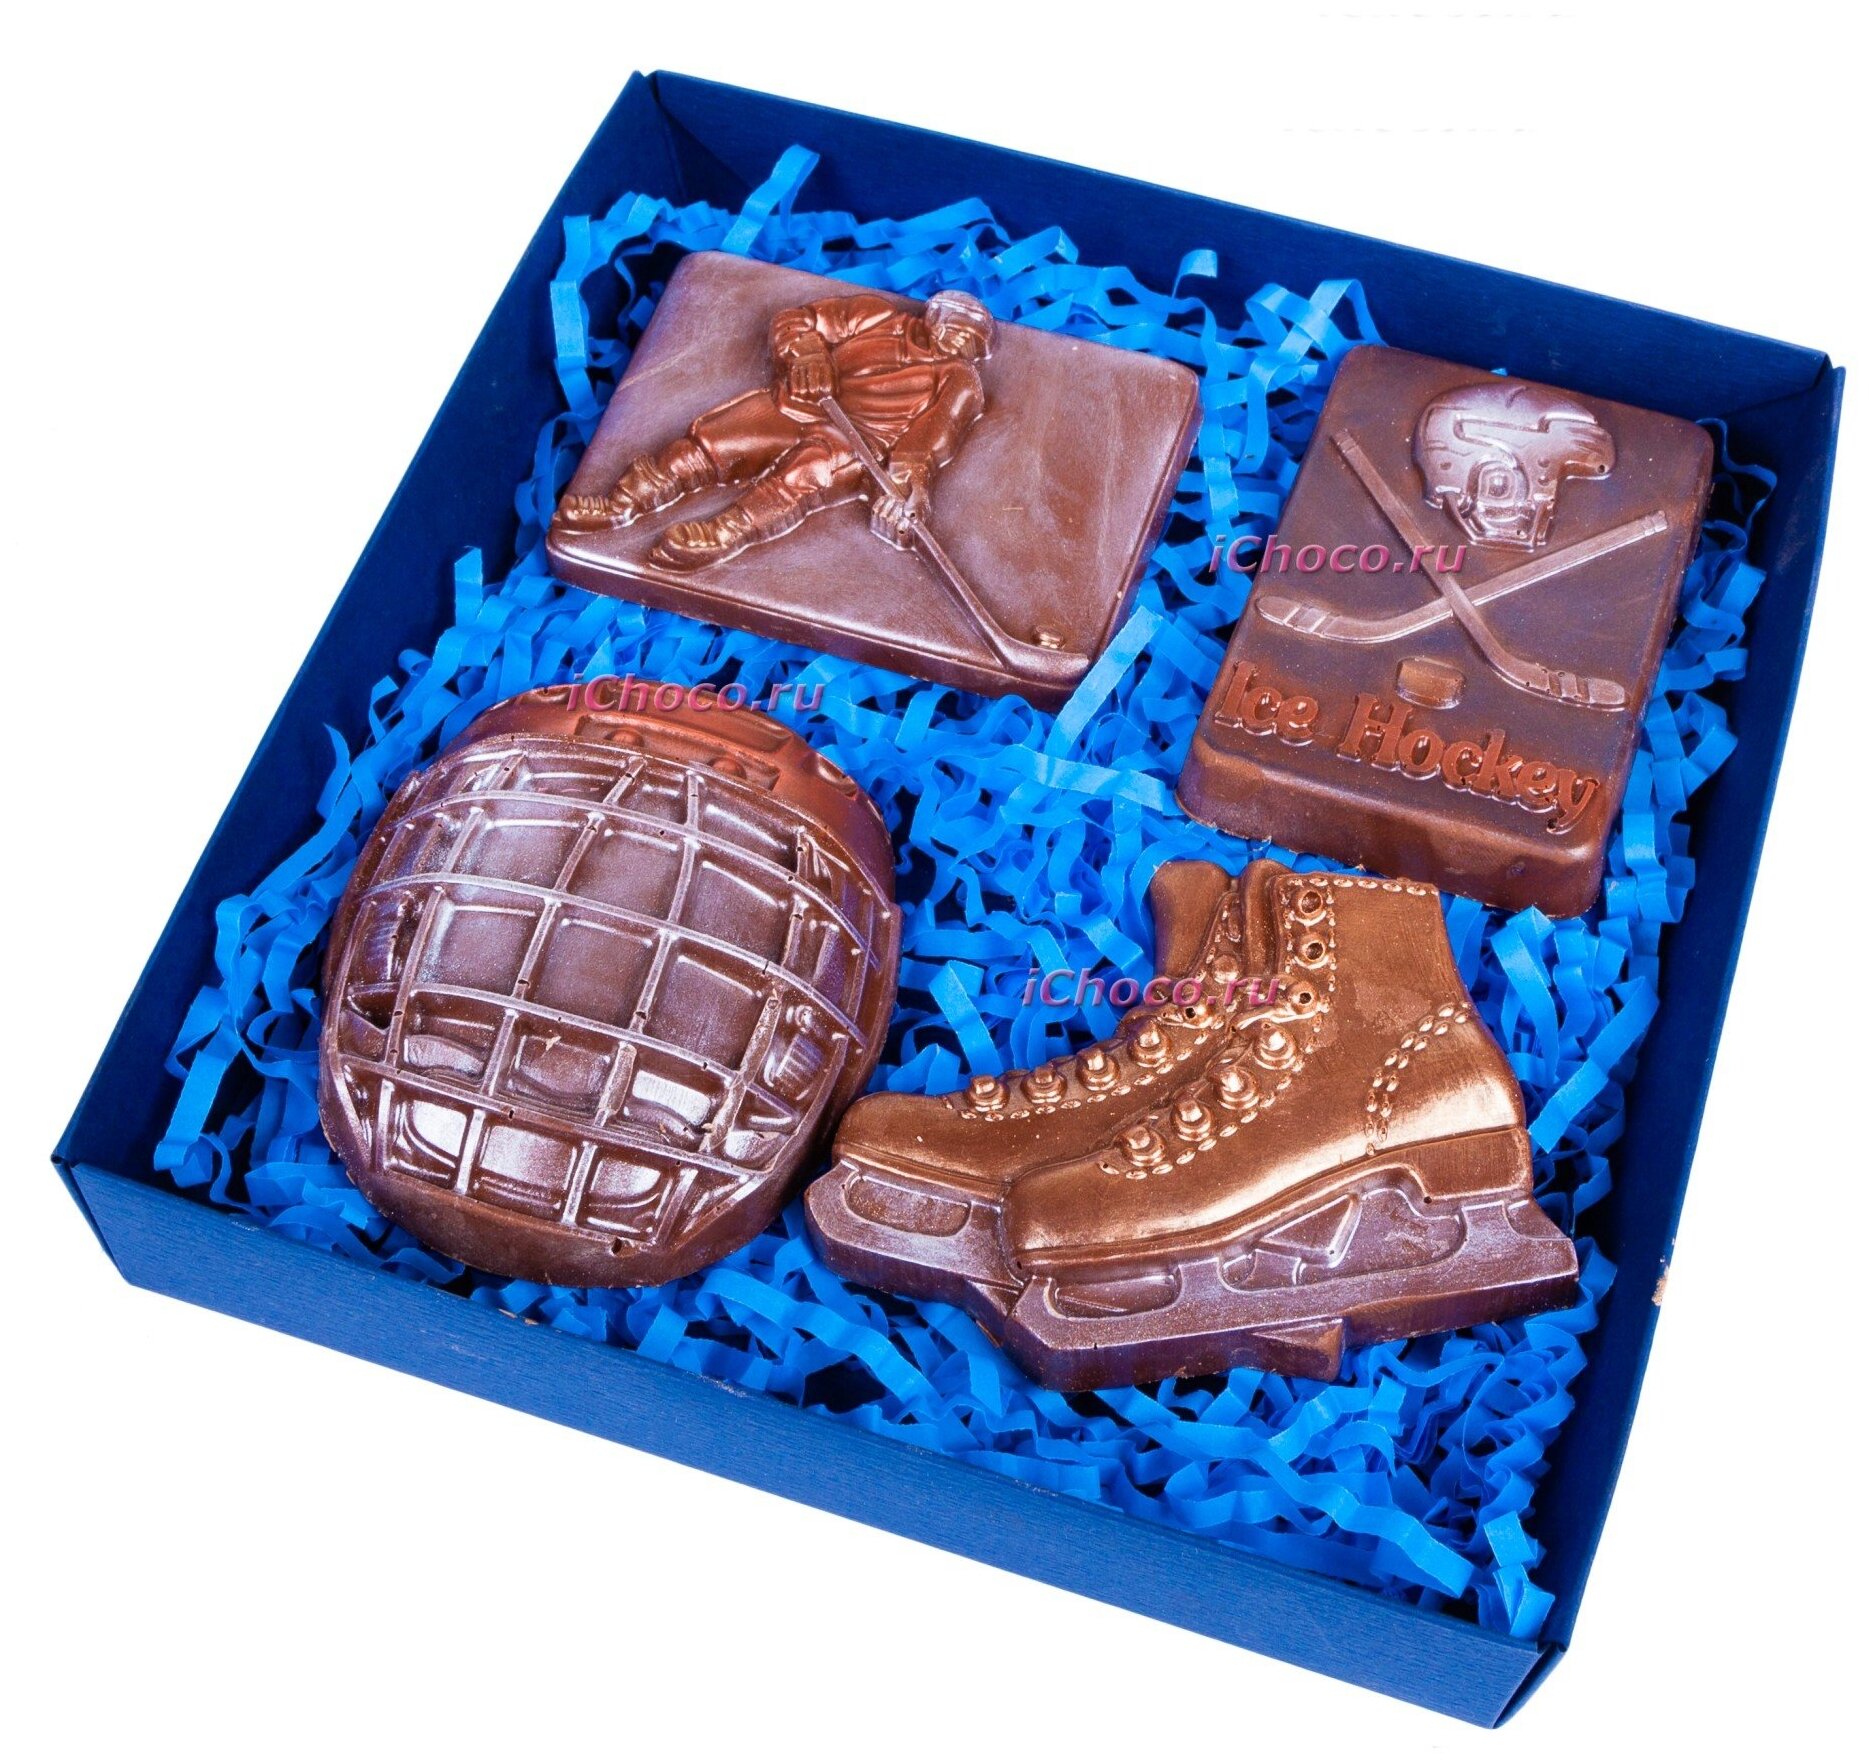 Шоколадная фигурка из бельгийского шоколада "Шоколадный набор "Хоккейный"